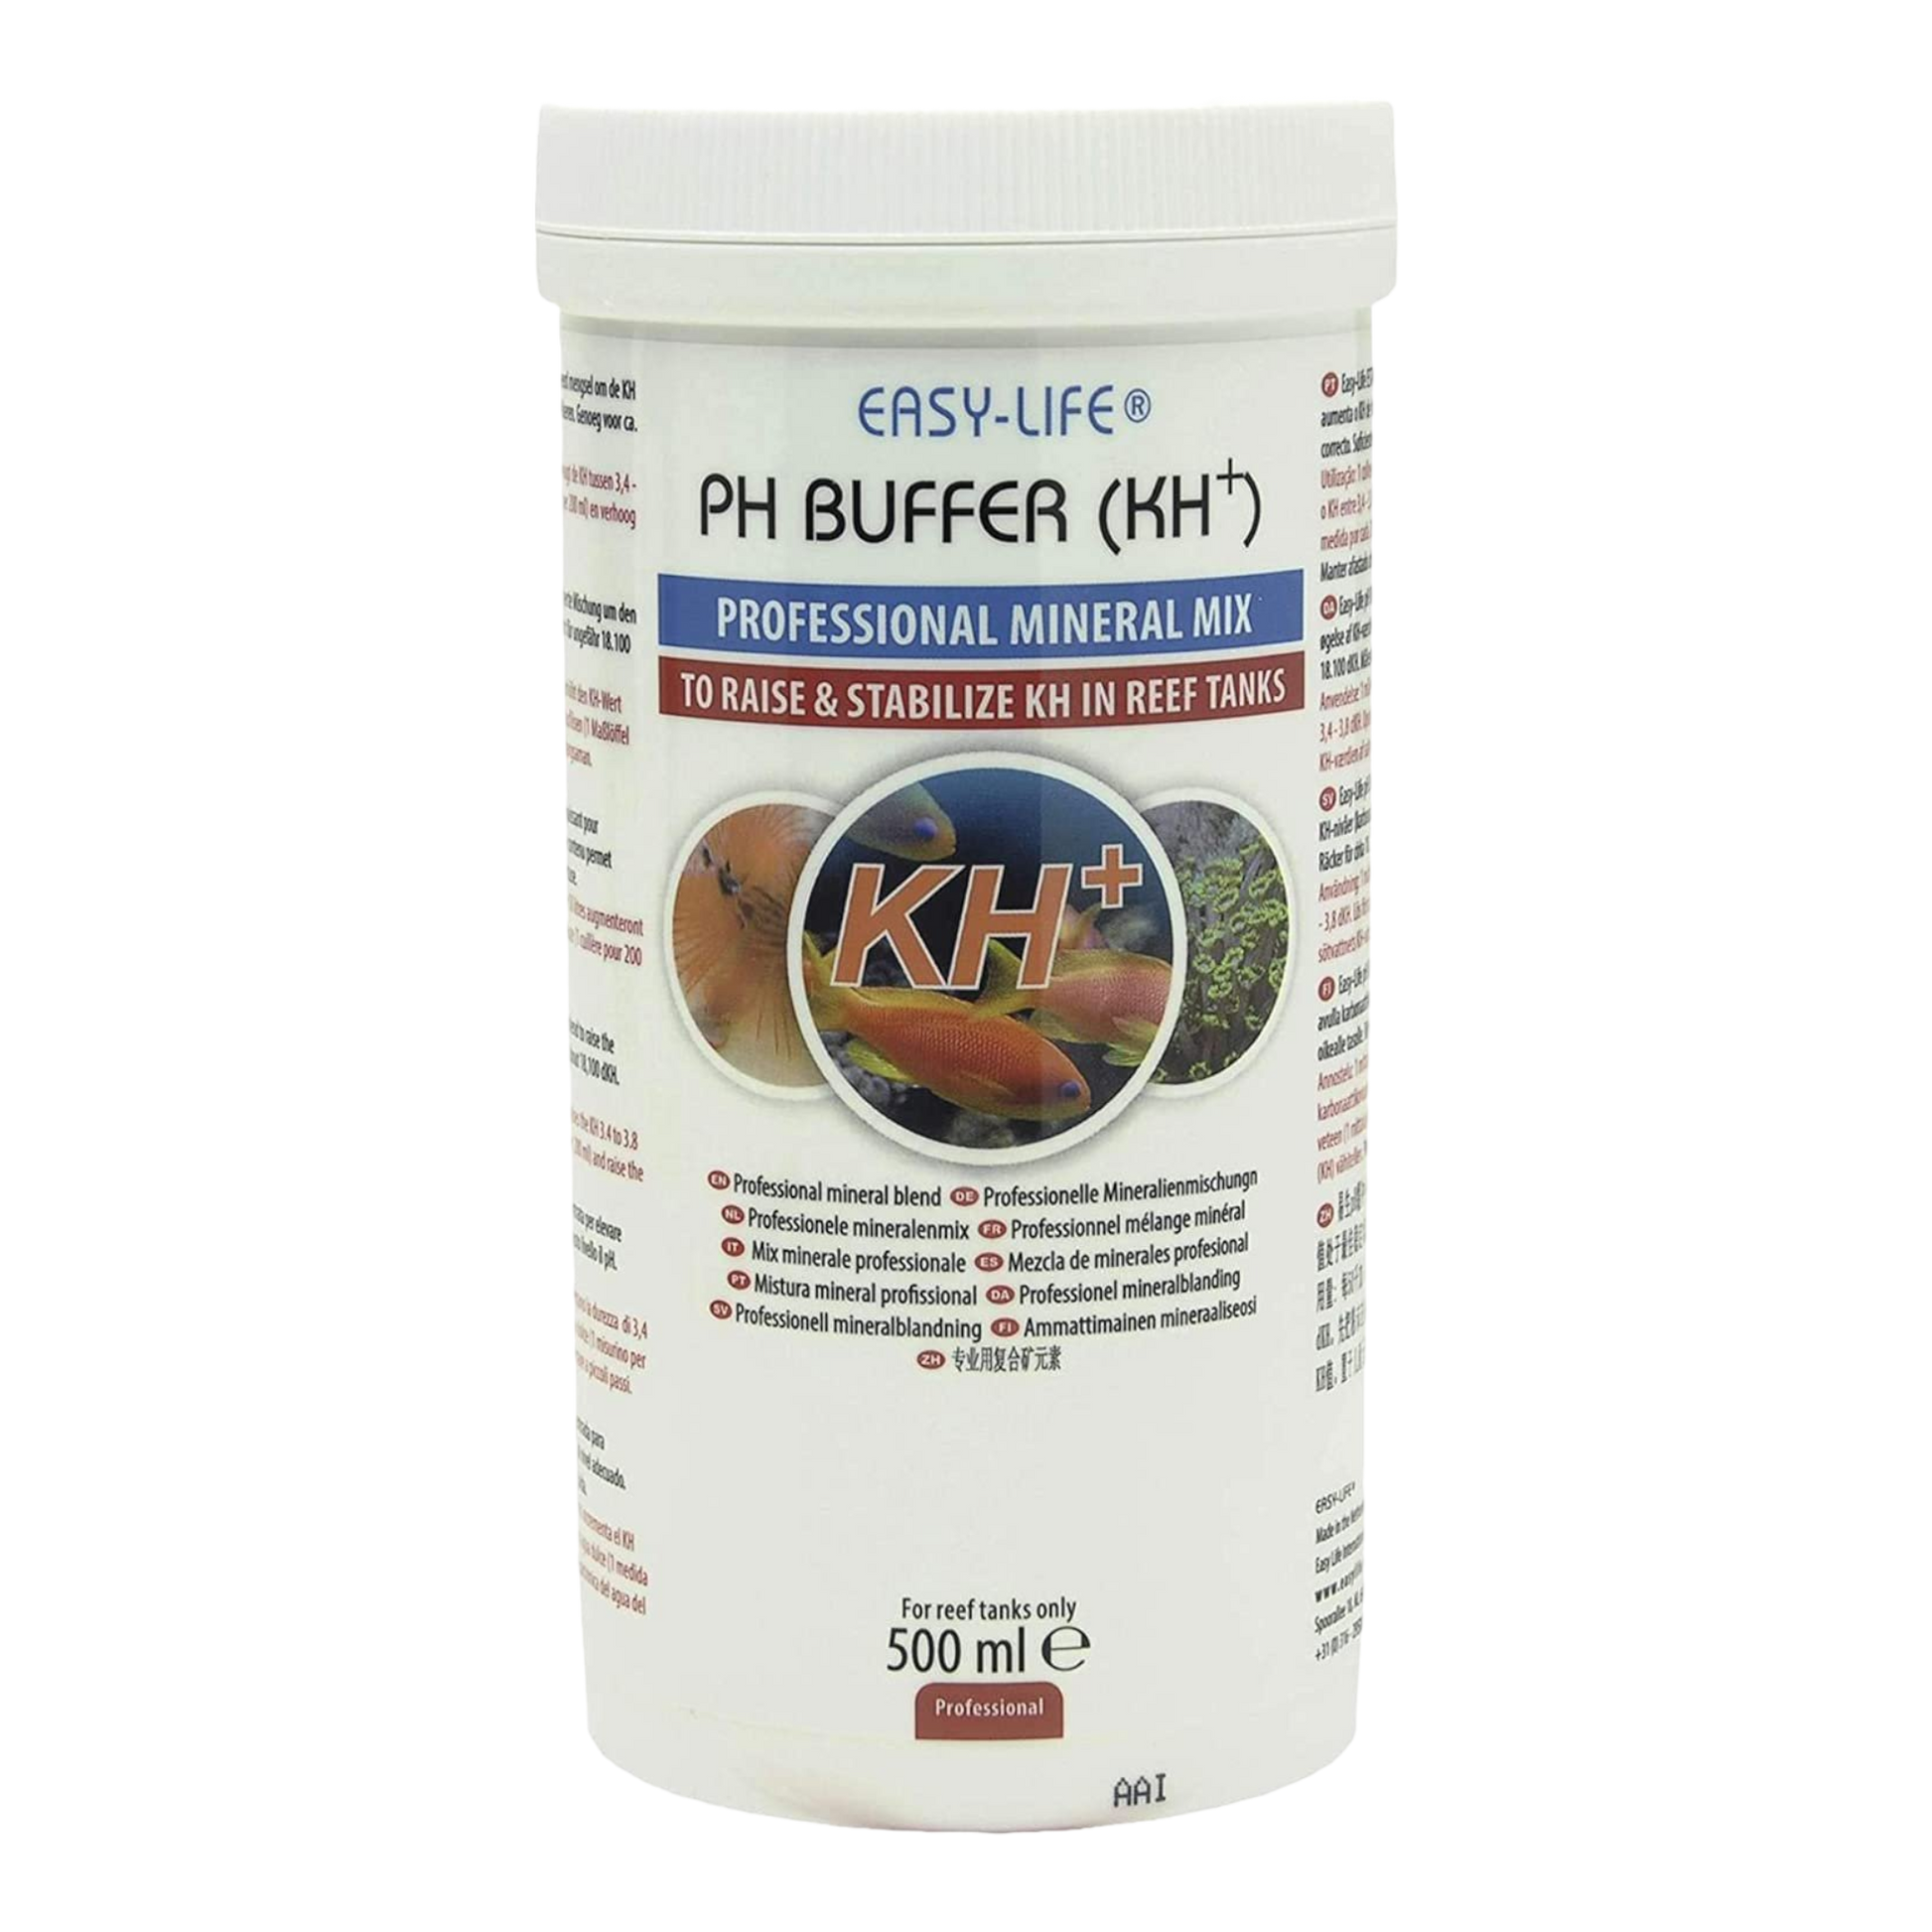  Easy-Life PH Buffer ist eine kräftige und konzentrierte Mischung um den KH-Wert zu erhöhen und den pH-Wert zu puffern. Der Packungsinhalt von 500 ml ist ausreichend für ungefähr 18.100 dKH.